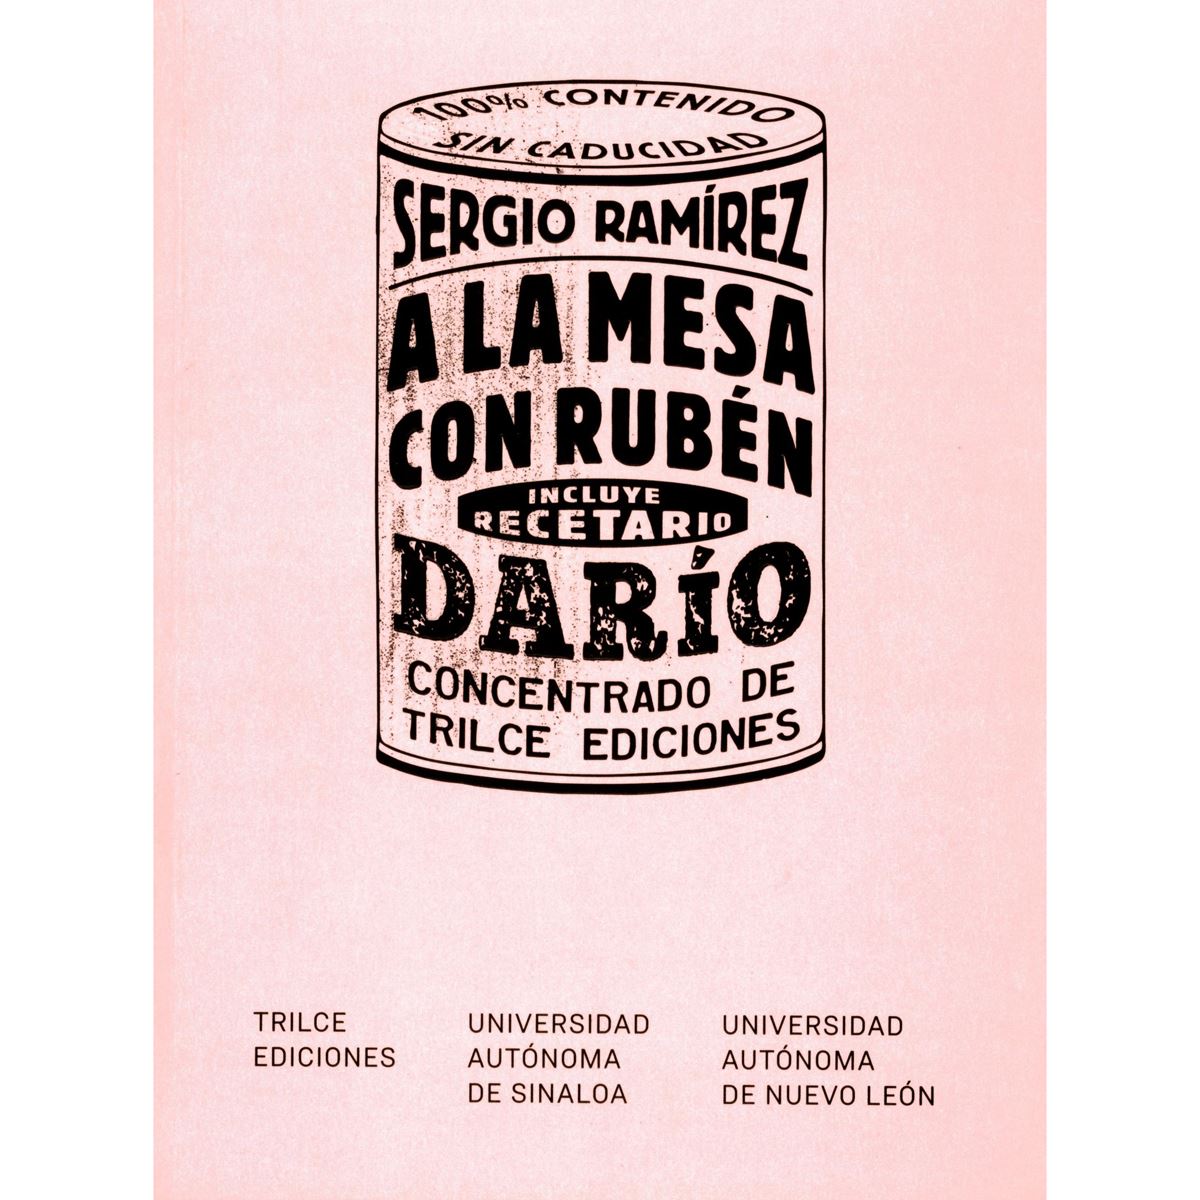 A la mesa con Rubén Darío